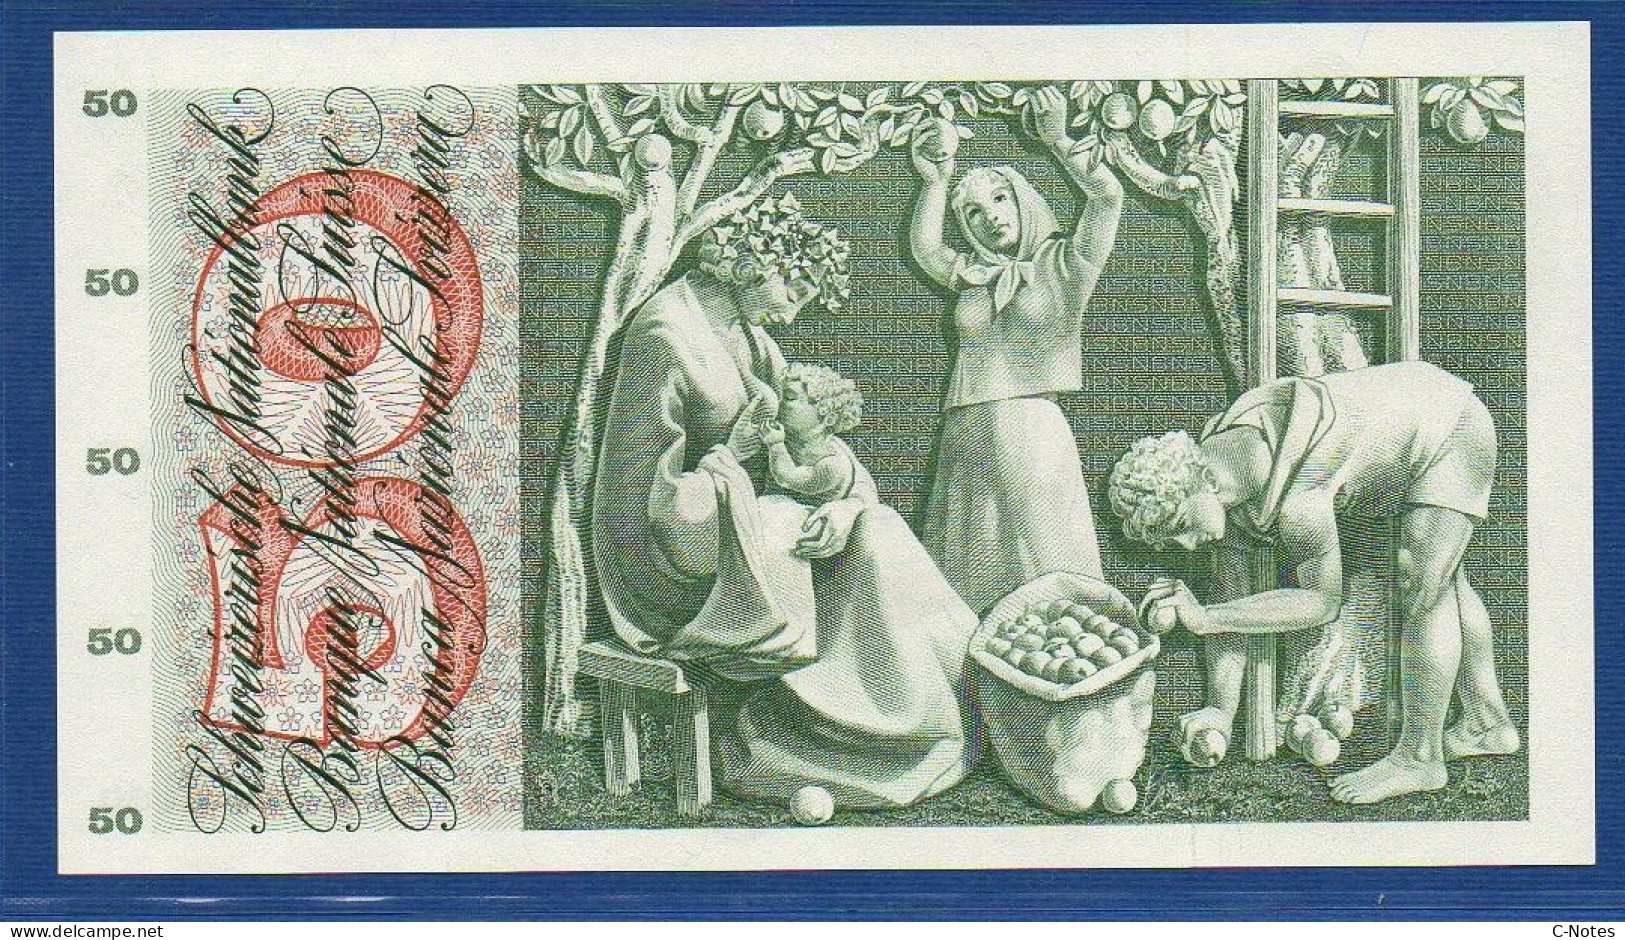 SWITZERLAND - P.48f(2) - 50 Francs 1965 AUNC, Serie 21R 53706  -signatures: Brenno Galli / R. Motta / Kunz - Schweiz